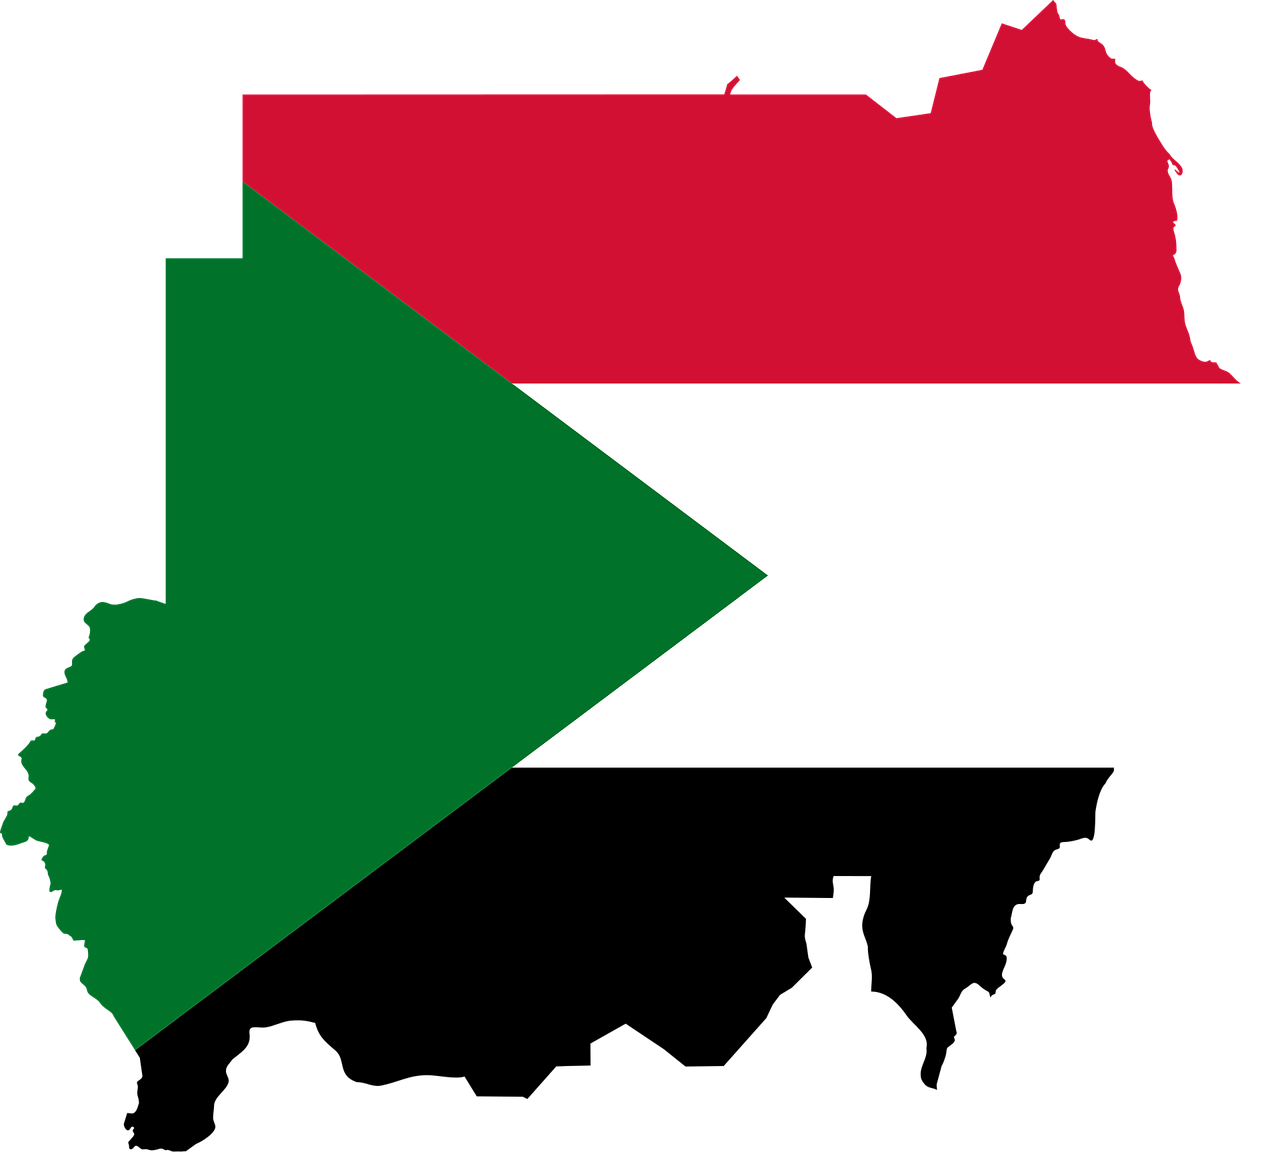 Un misionero católico considera que la separación entre religión y Estado en Sudán trae la pluralidad